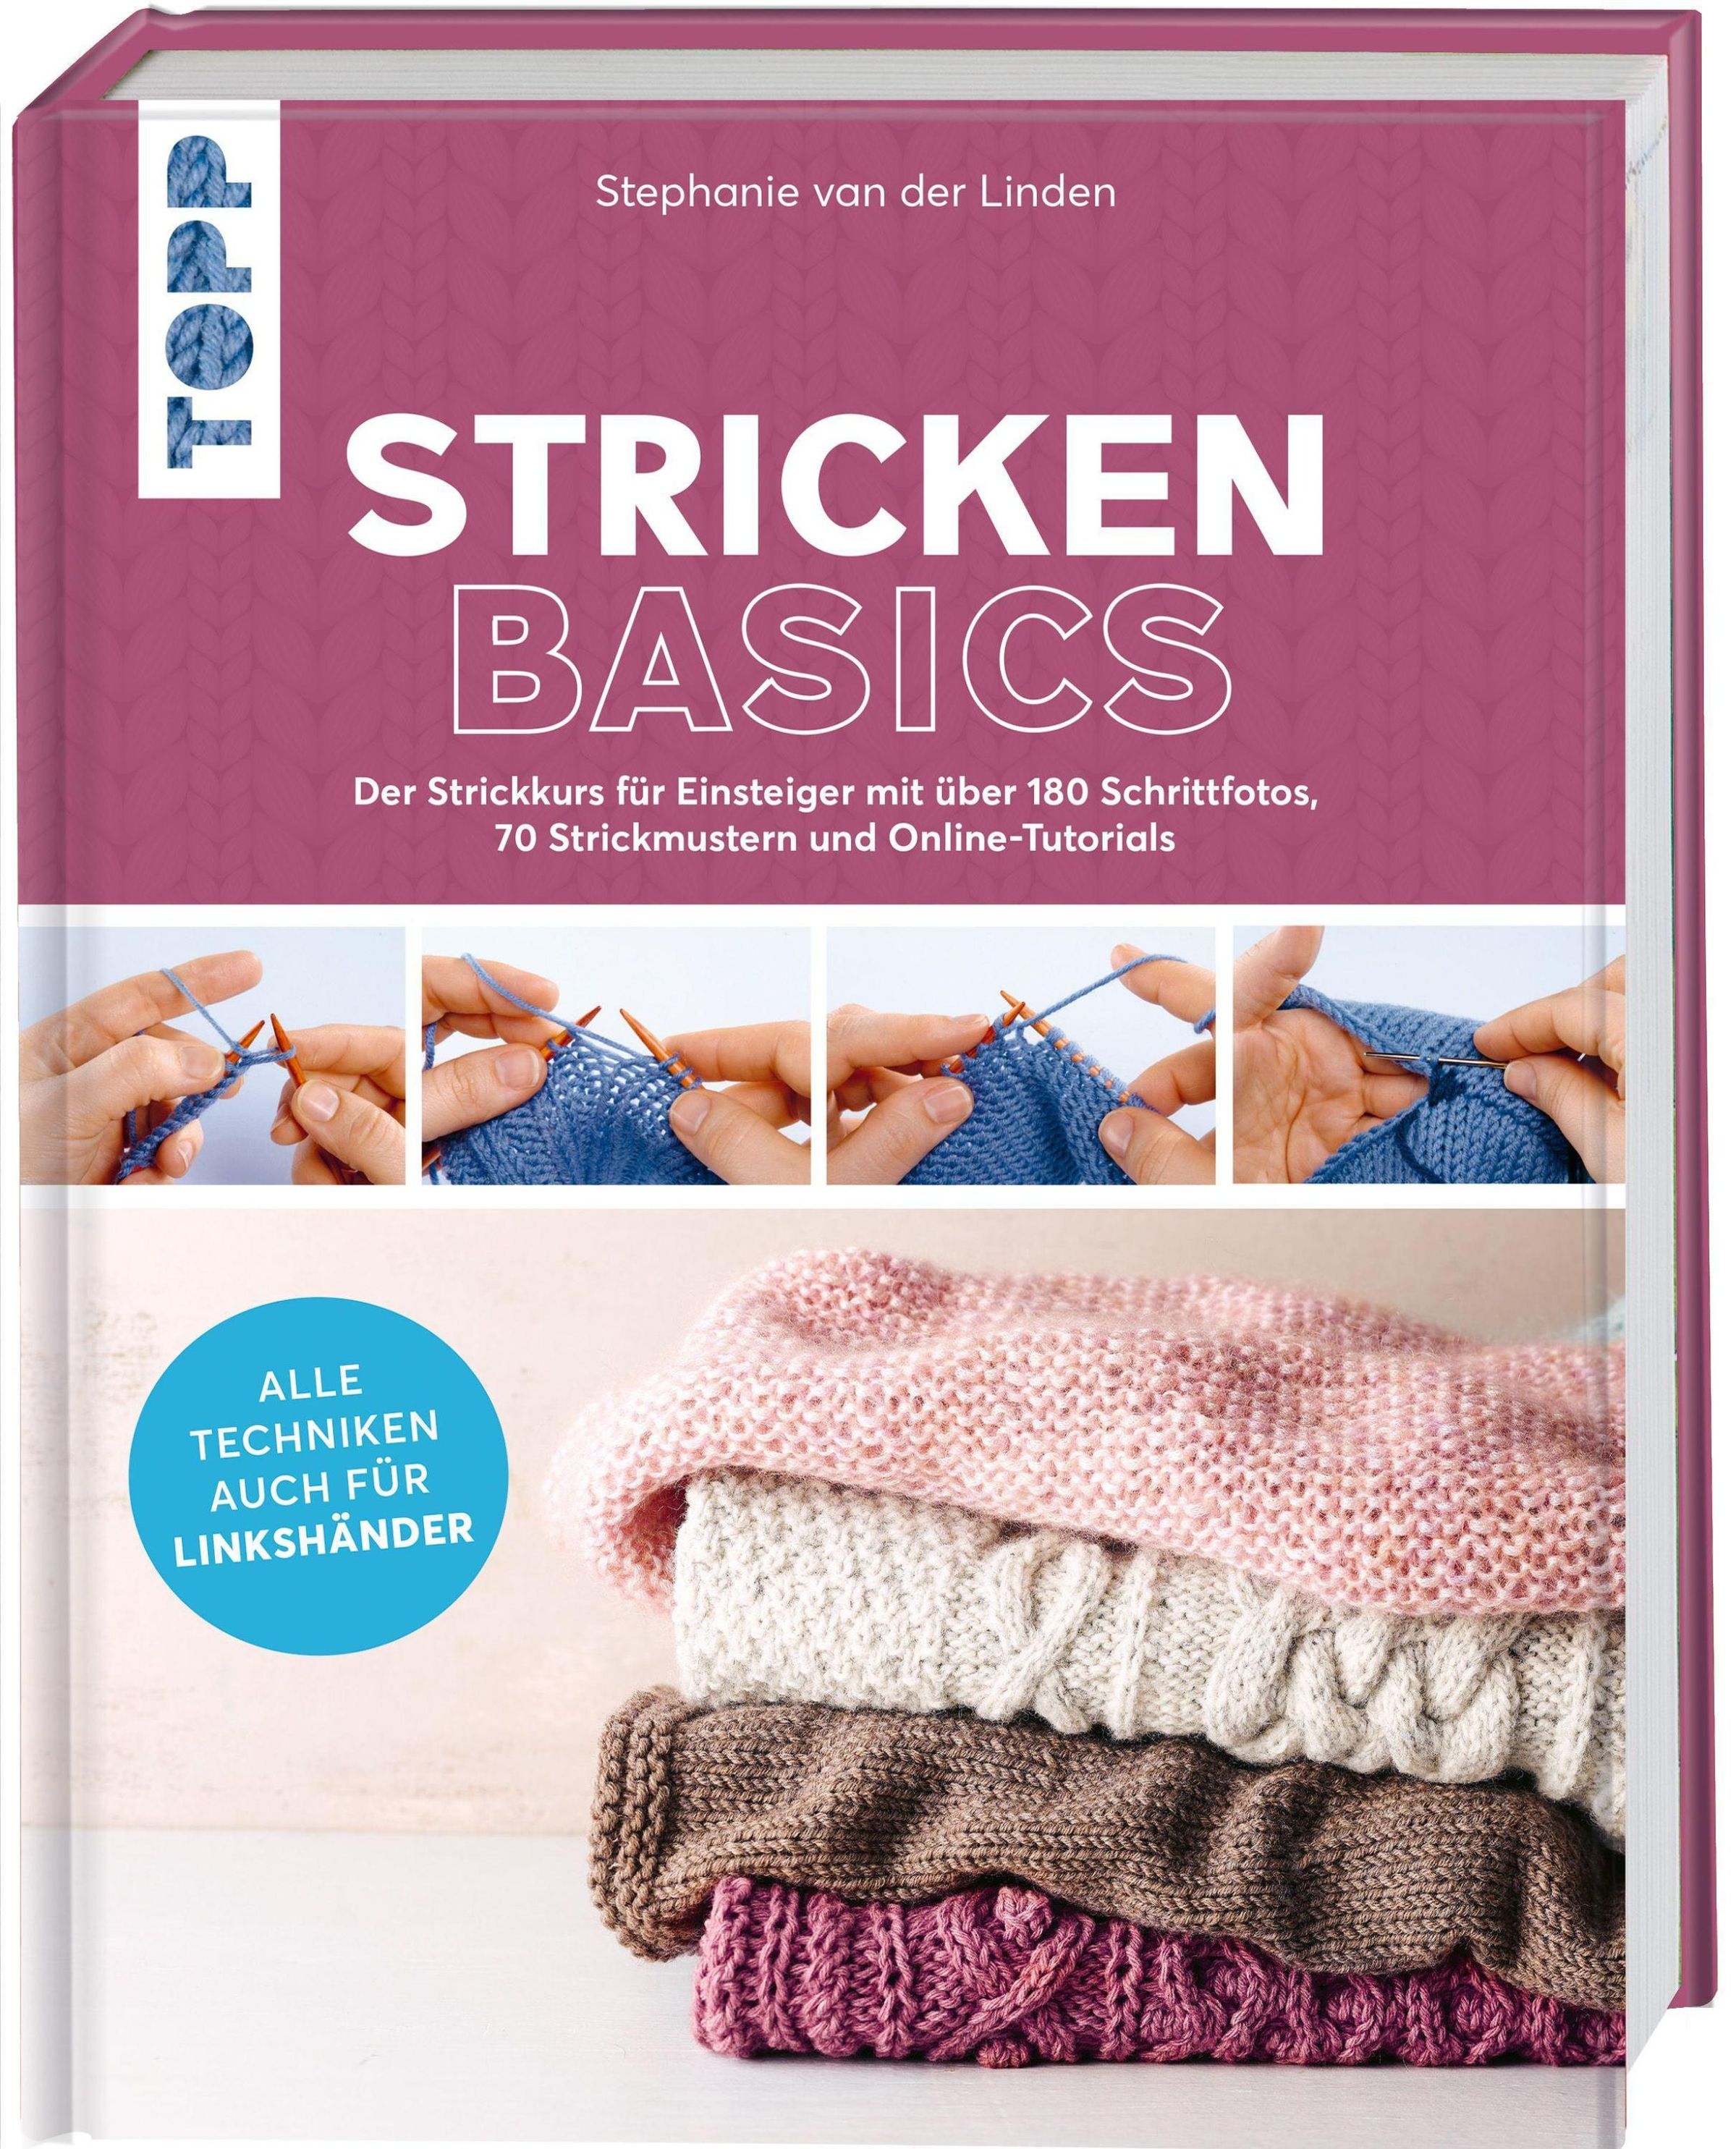 Stricken basics - Alle Techniken auch für Linkshänder! Buch